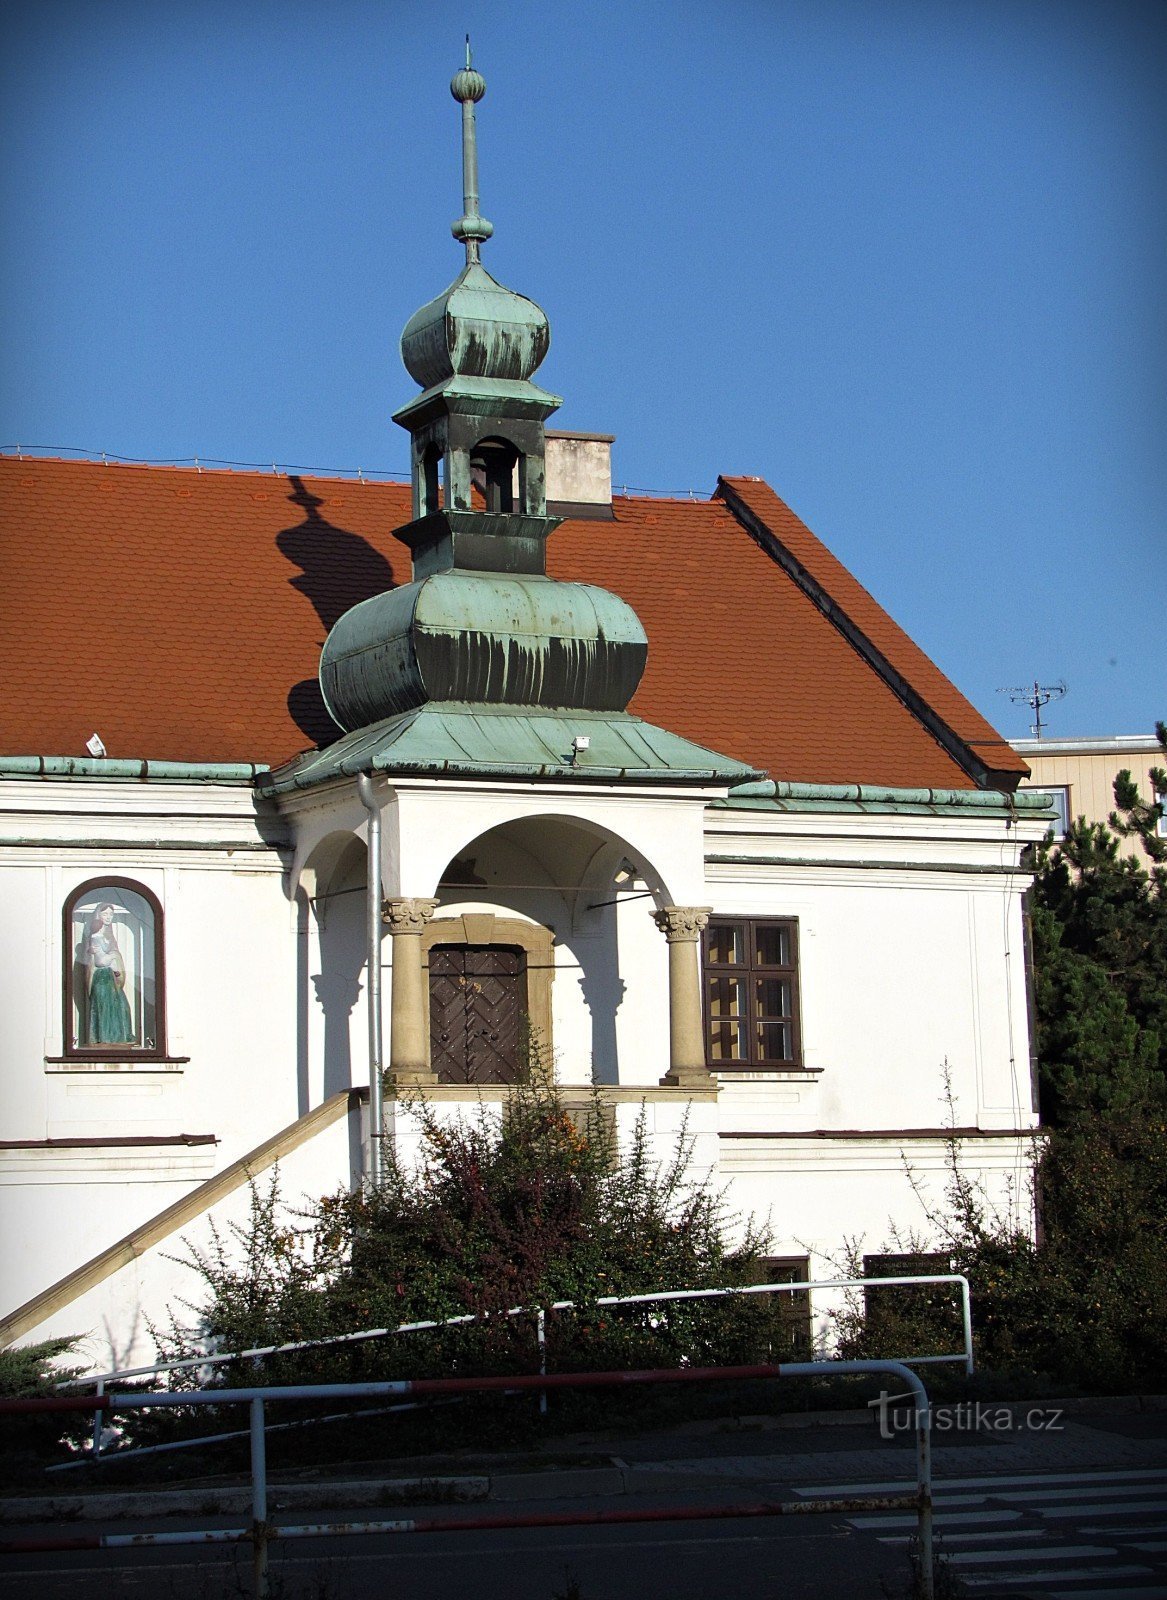 Valašské Meziříčí - Krásenská town hall